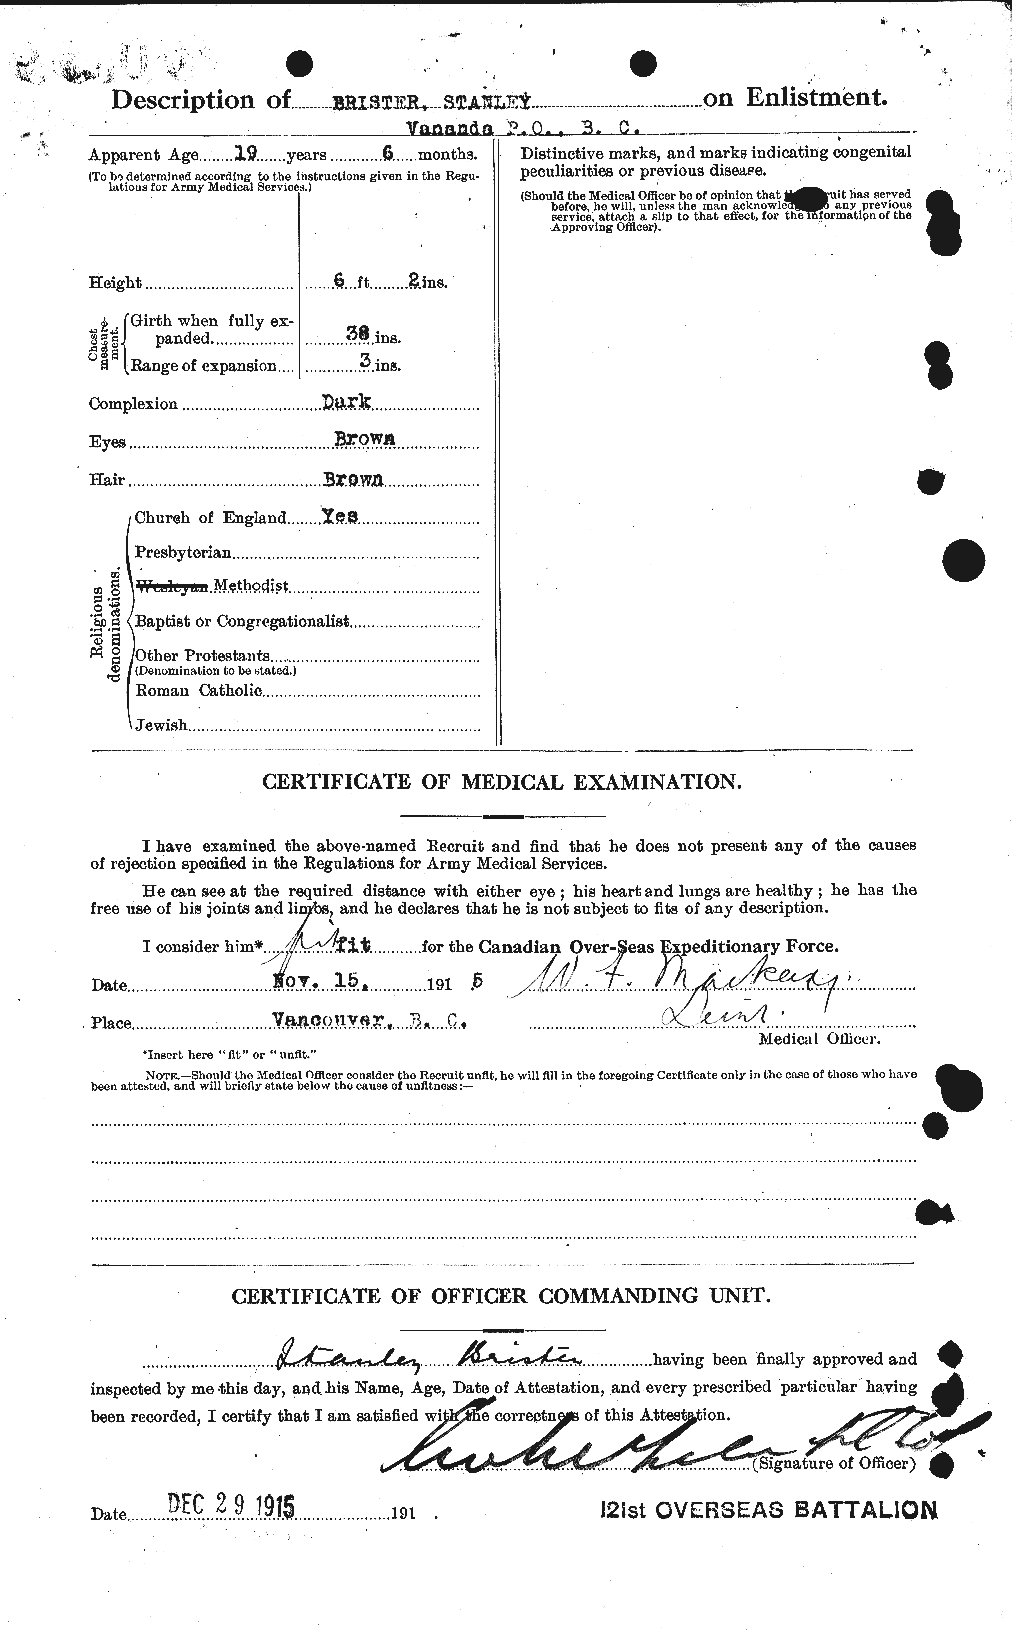 Dossiers du Personnel de la Première Guerre mondiale - CEC 260310b